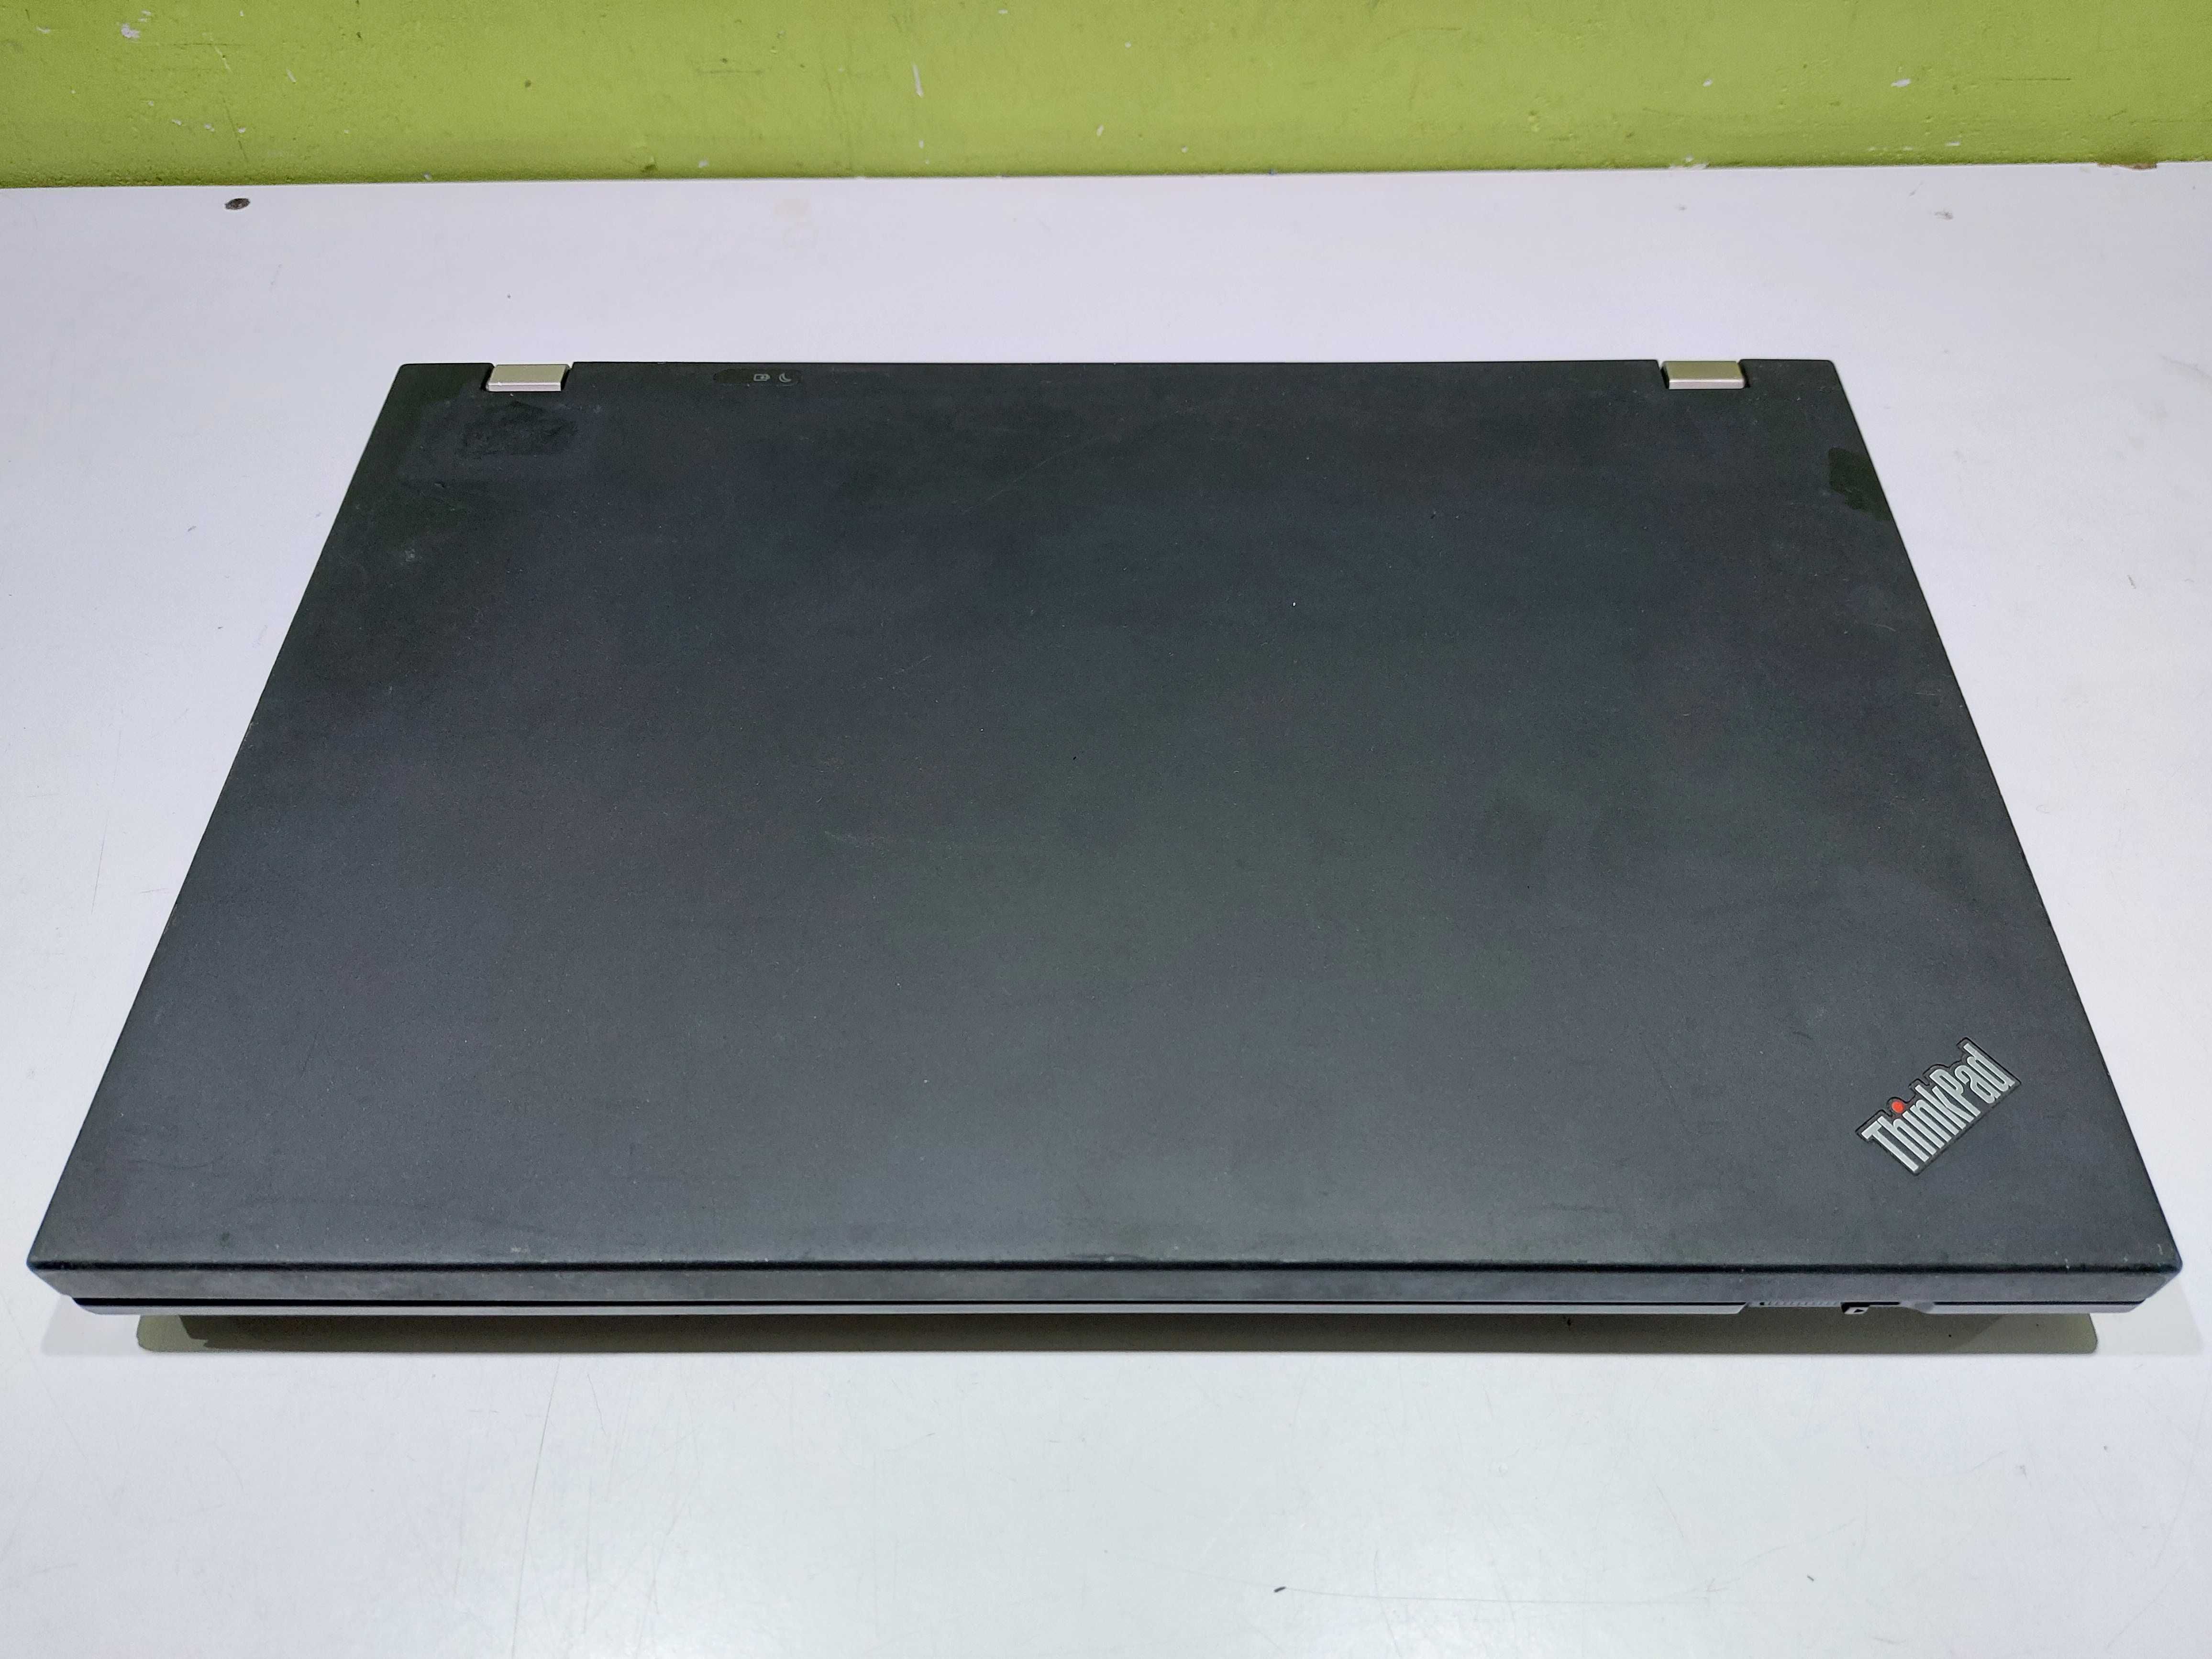 Laptop Lenovo W510 i7 4GB 500GB 15,6" sklep